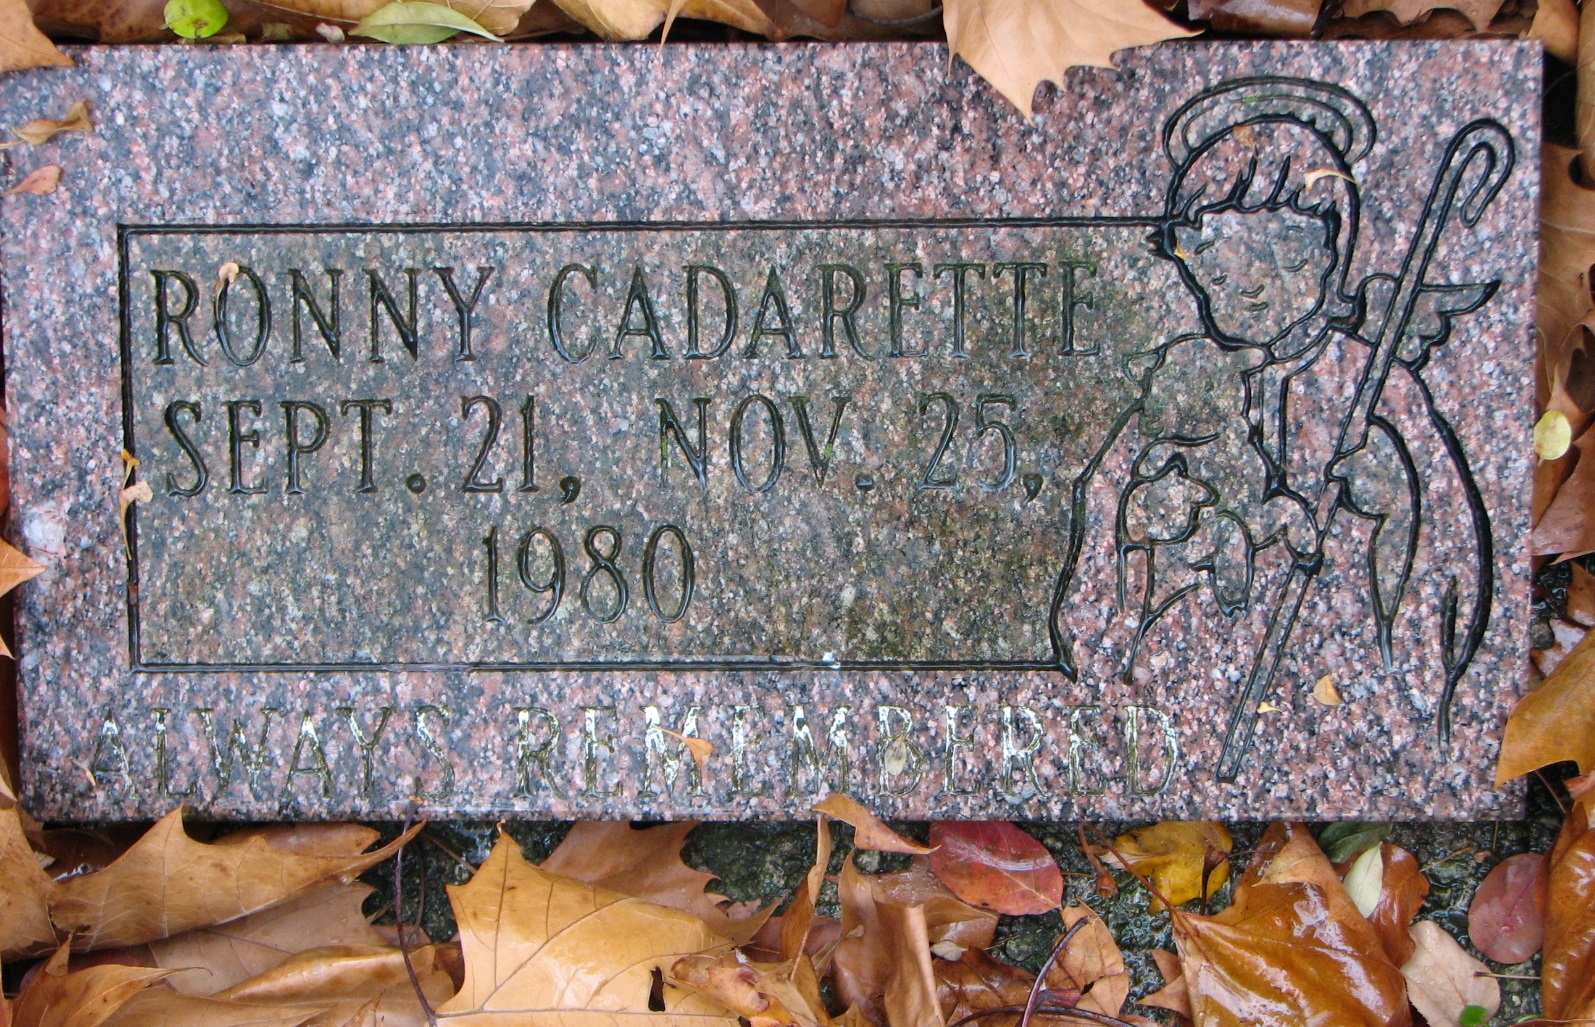 Ronny Cadarette 1980